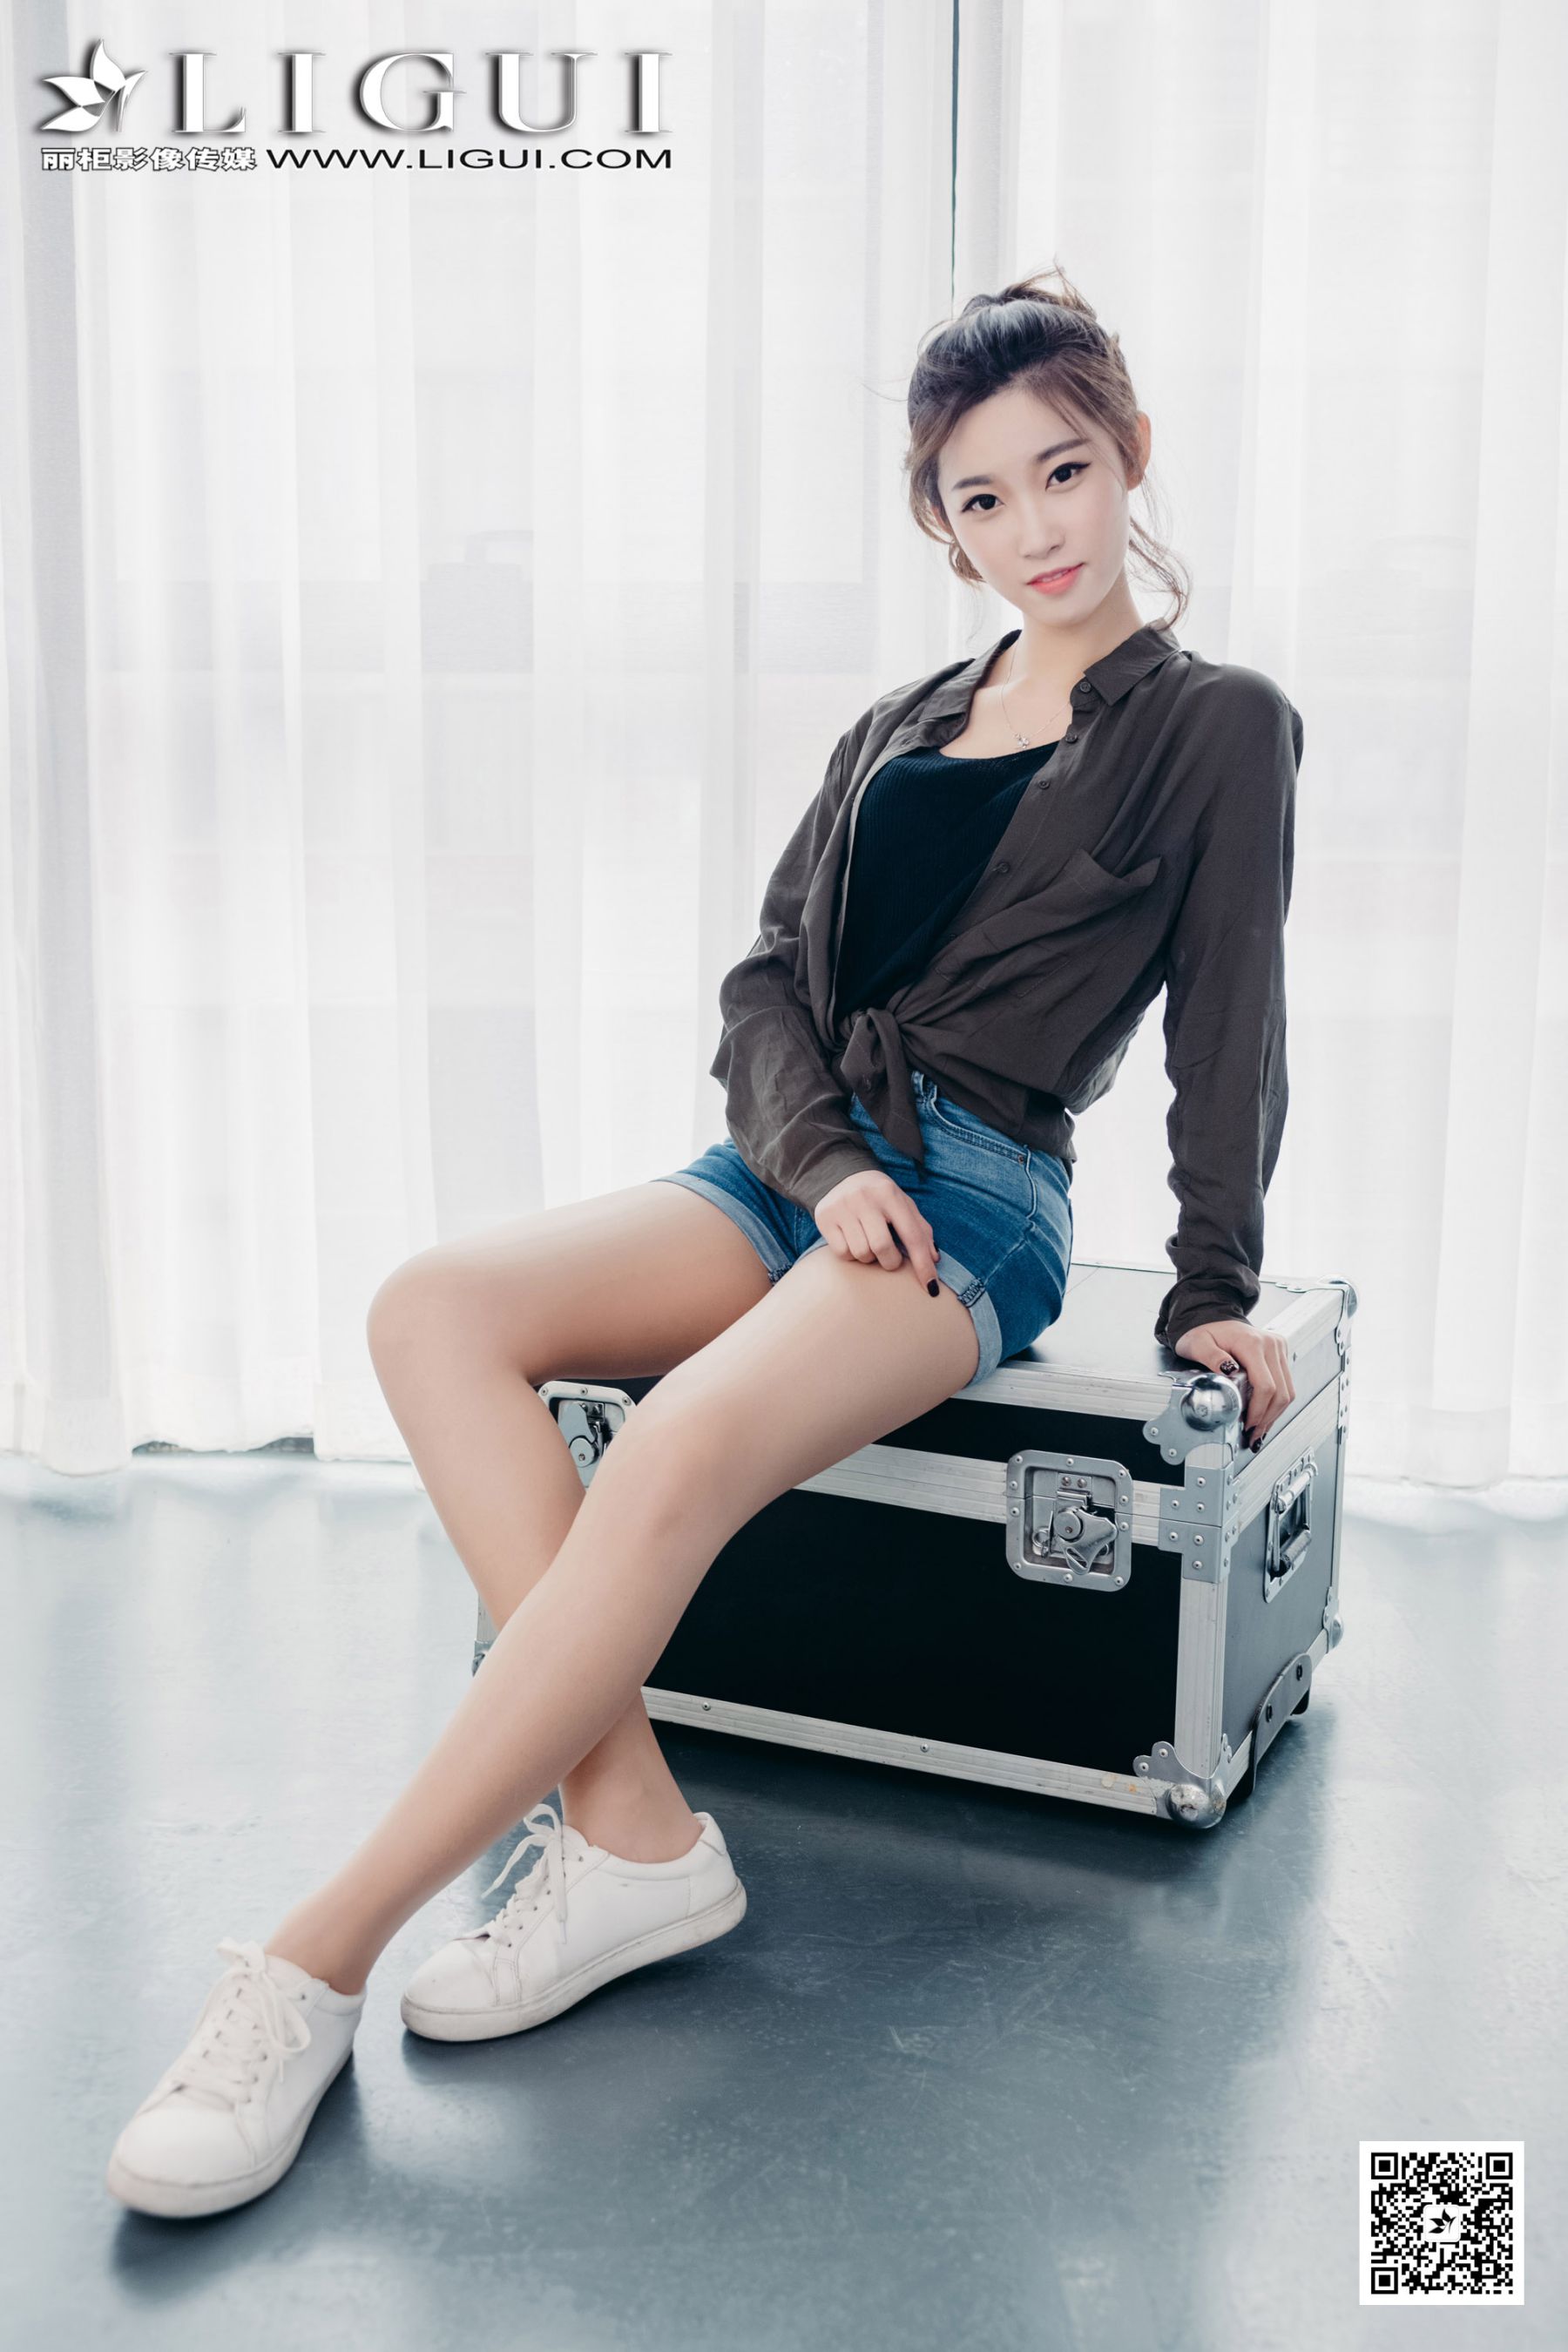 Model Xiao Xiao "Sweet Girl in Hot Pants" [Li Cabinet] Page 1 No.dc075f